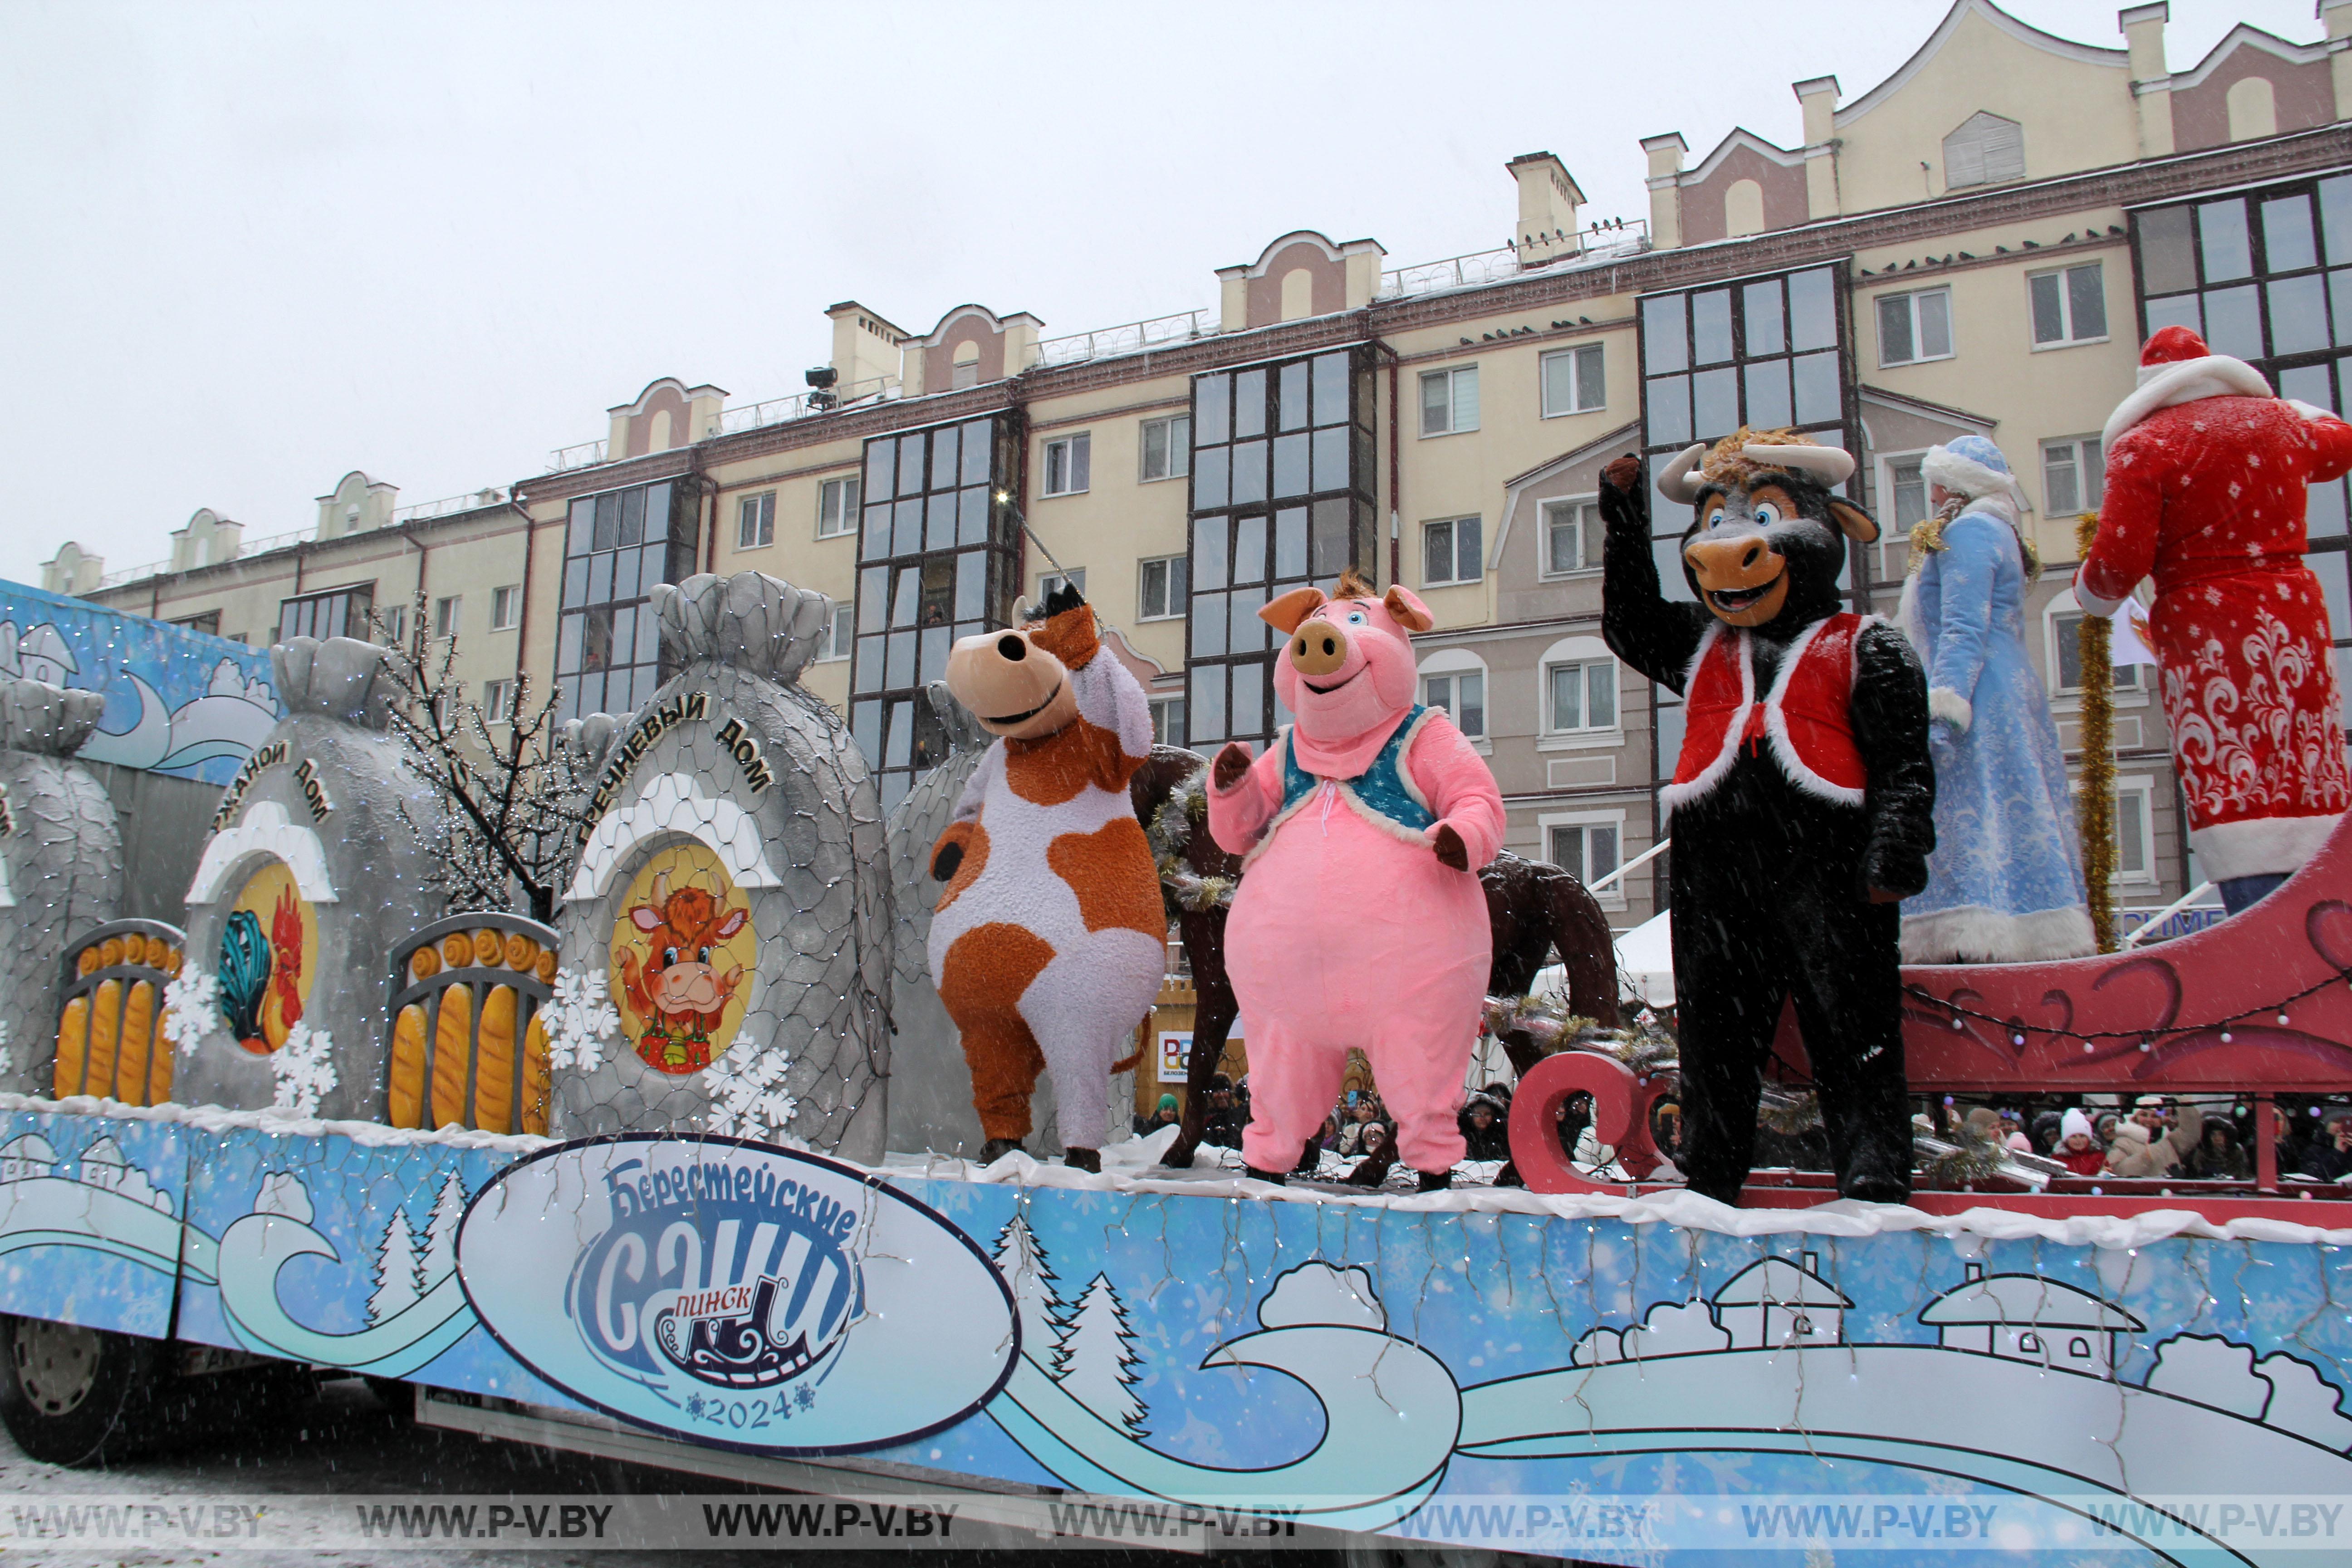 Увидели самое яркое событие областного фестиваля-ярмарки «Берестейские сани» - карнавальное шествие стилизованных автомашин и парад Дедов Морозов и Снегурочек